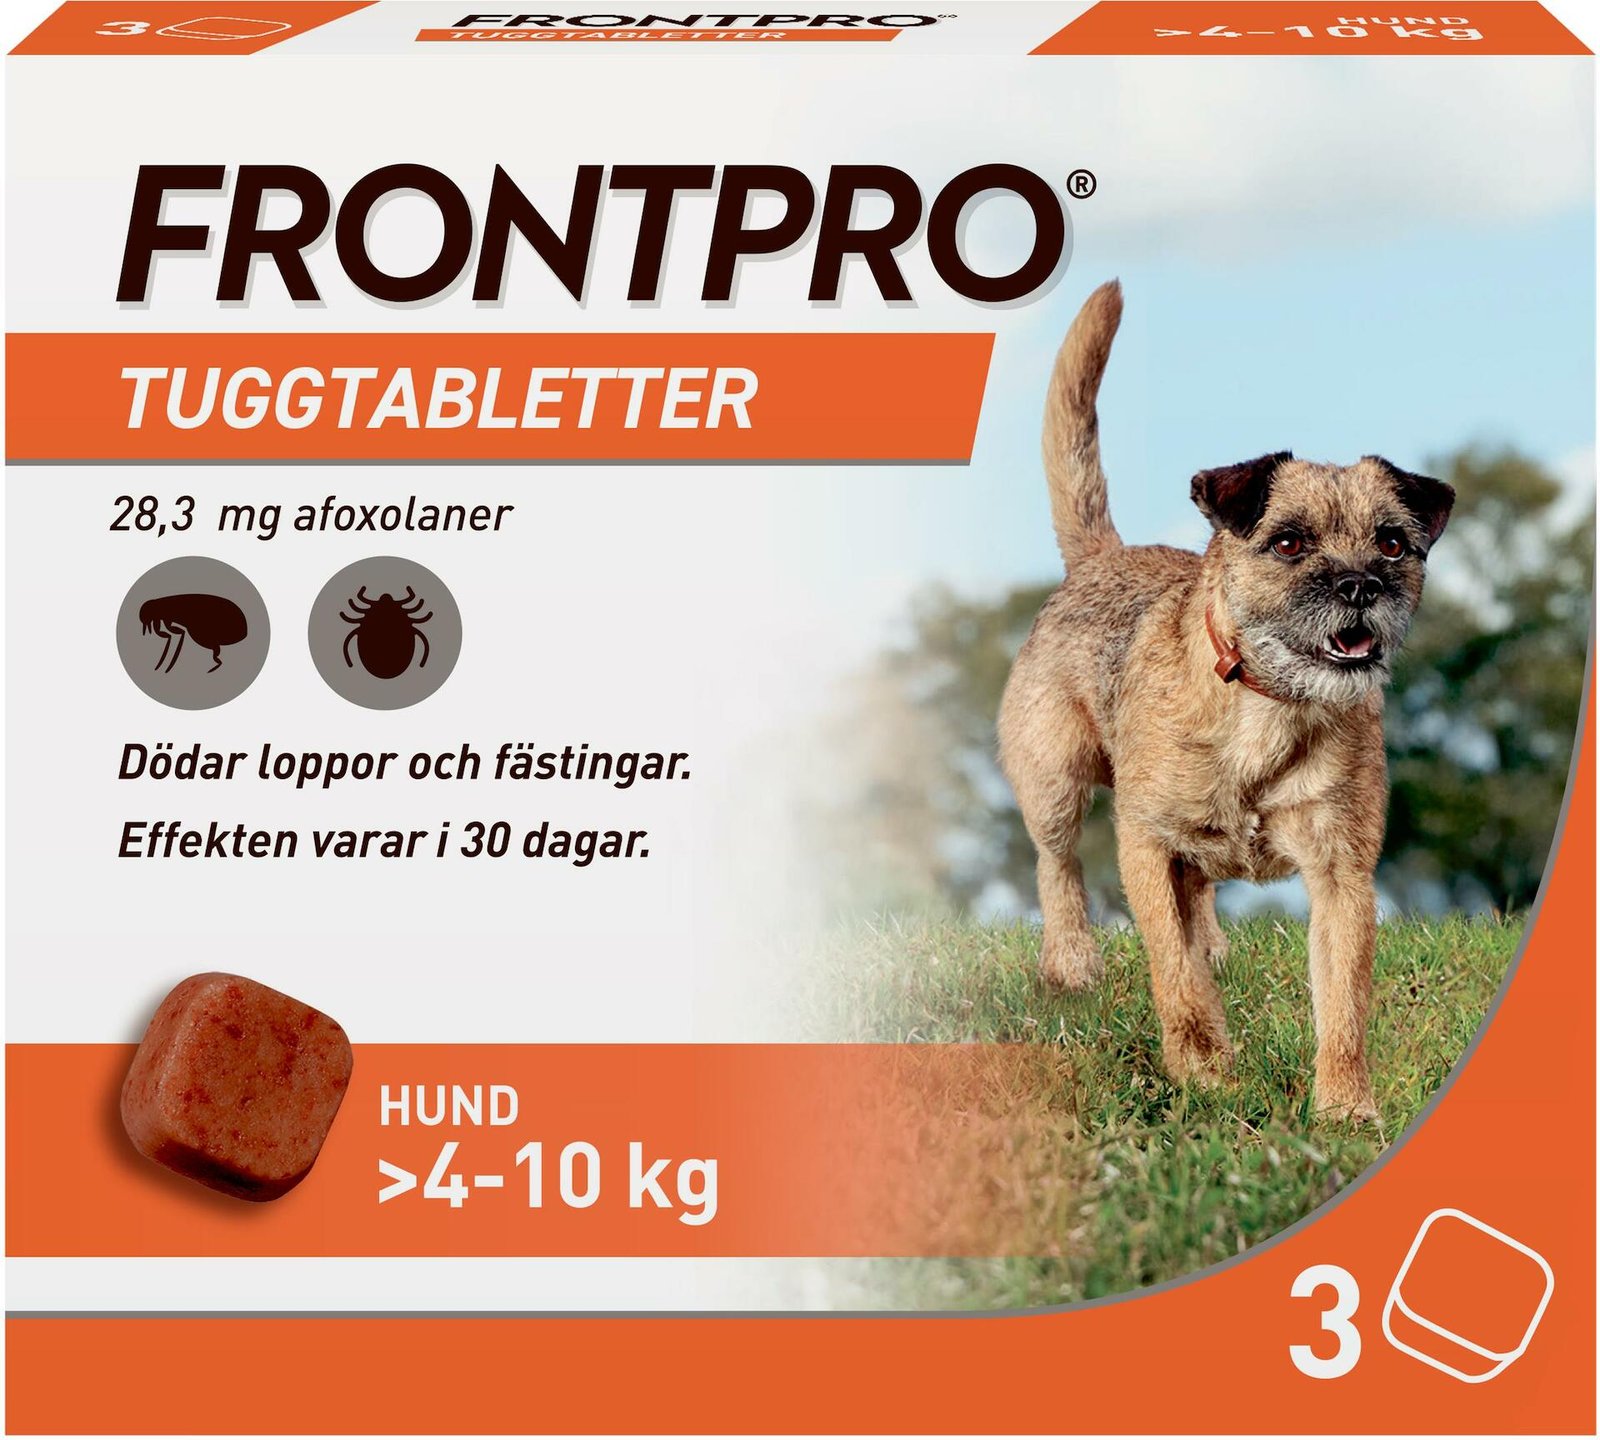 FRONTPRO Hund M 4-10 kg 283 mg afoxolaner 3 tuggtabletter